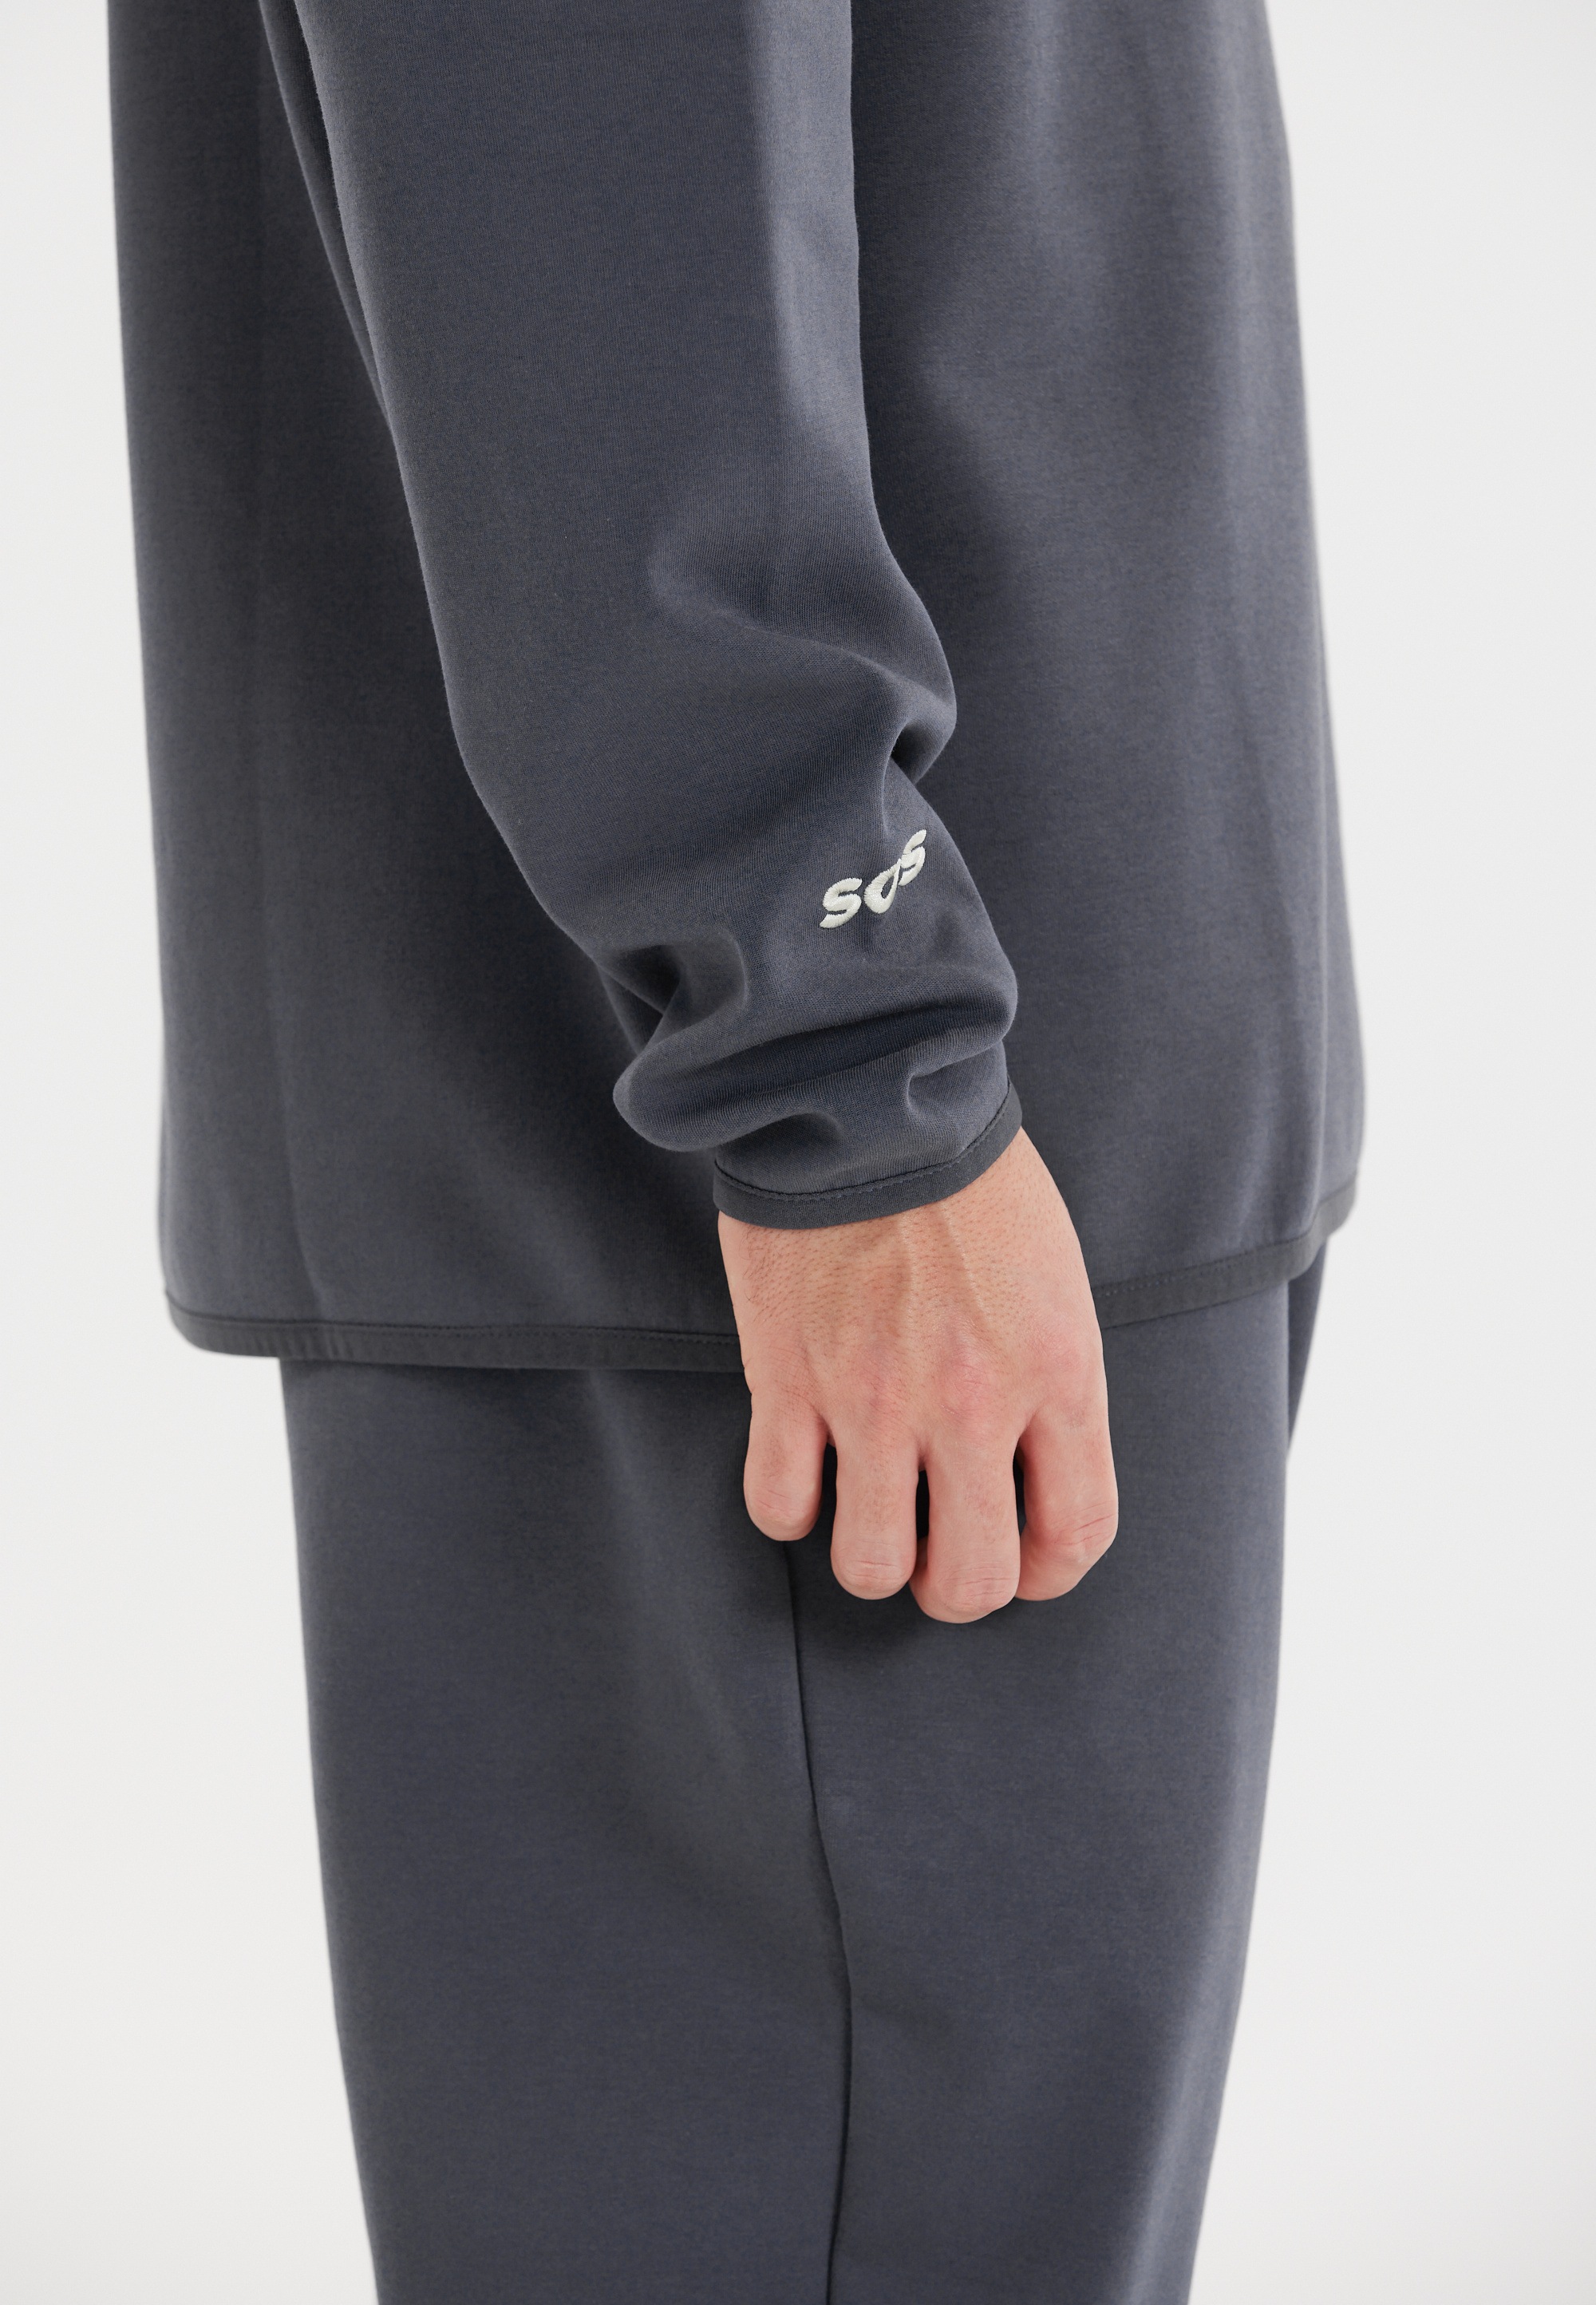 SOS Sweatshirt »Vail«, mit Kapuze und weicher Baumwoll-Qualität